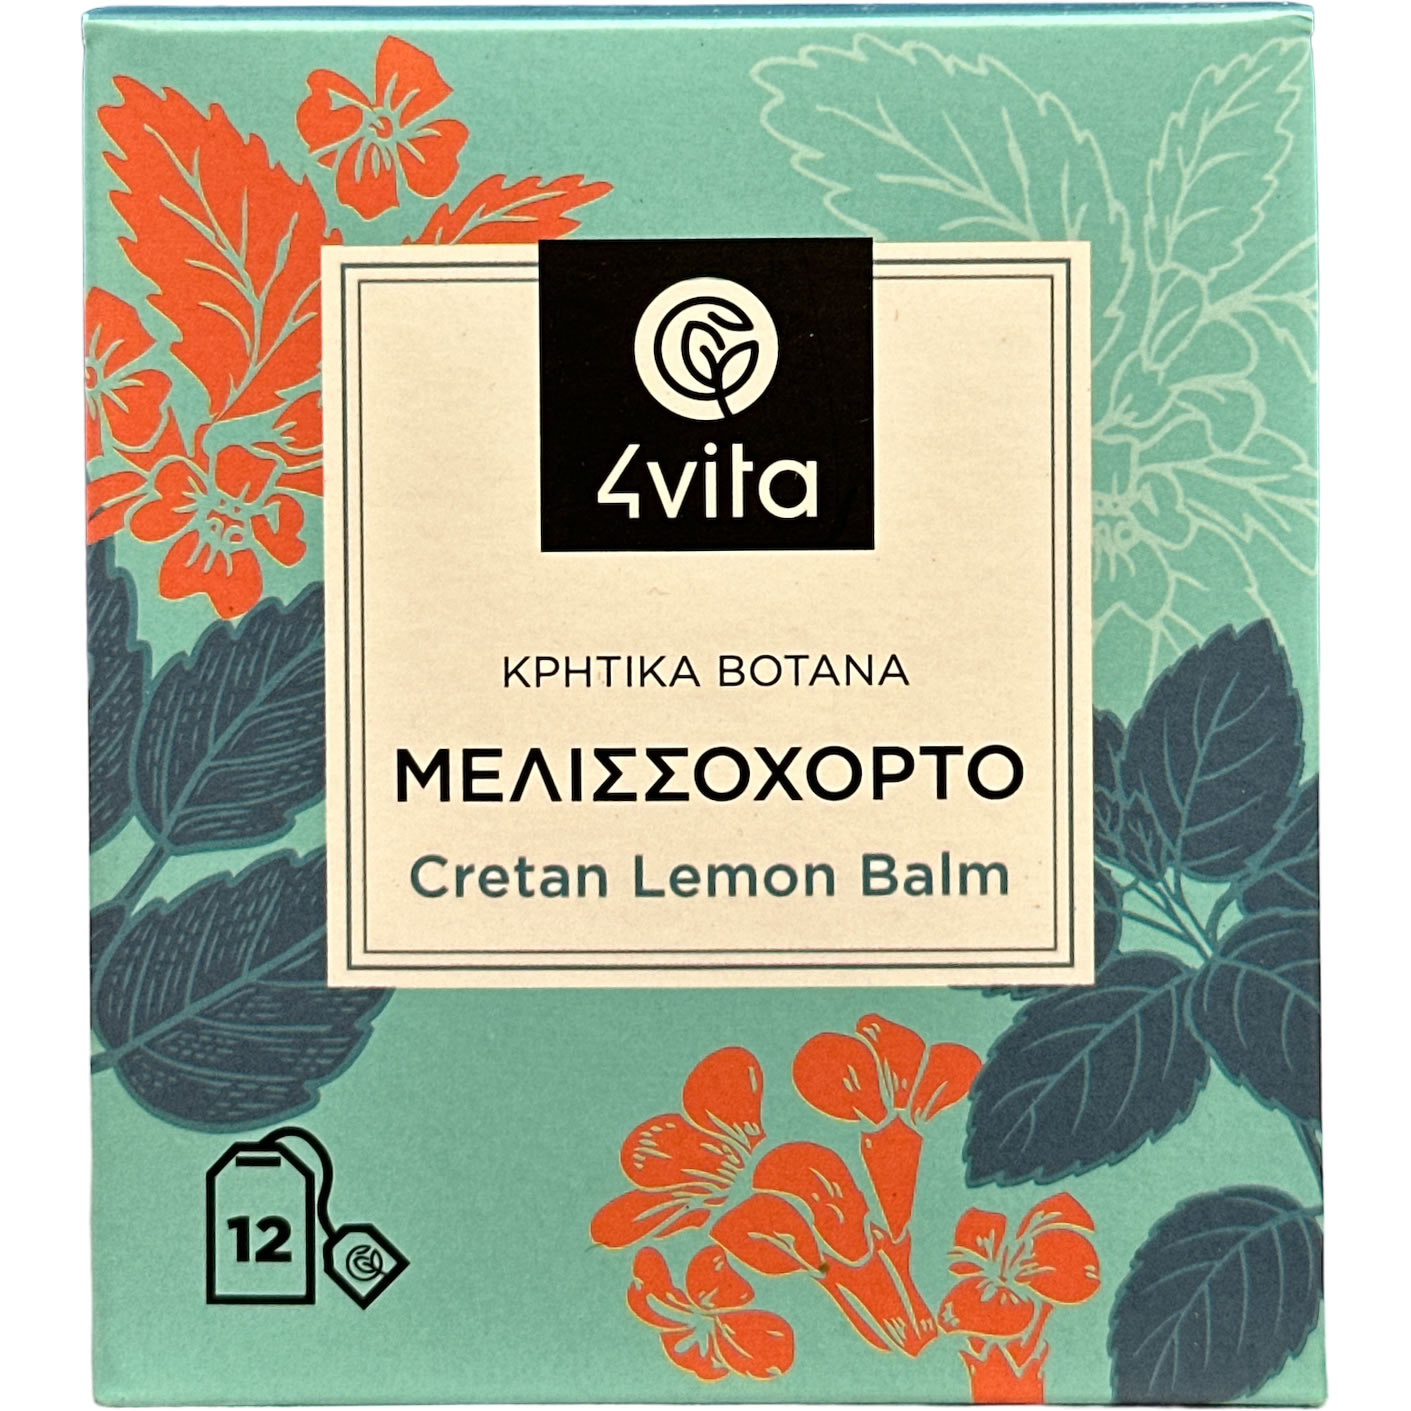 Zitronenmelisse Tee - 4vita - (Box / 12 Teebeutel á 1,5 g)